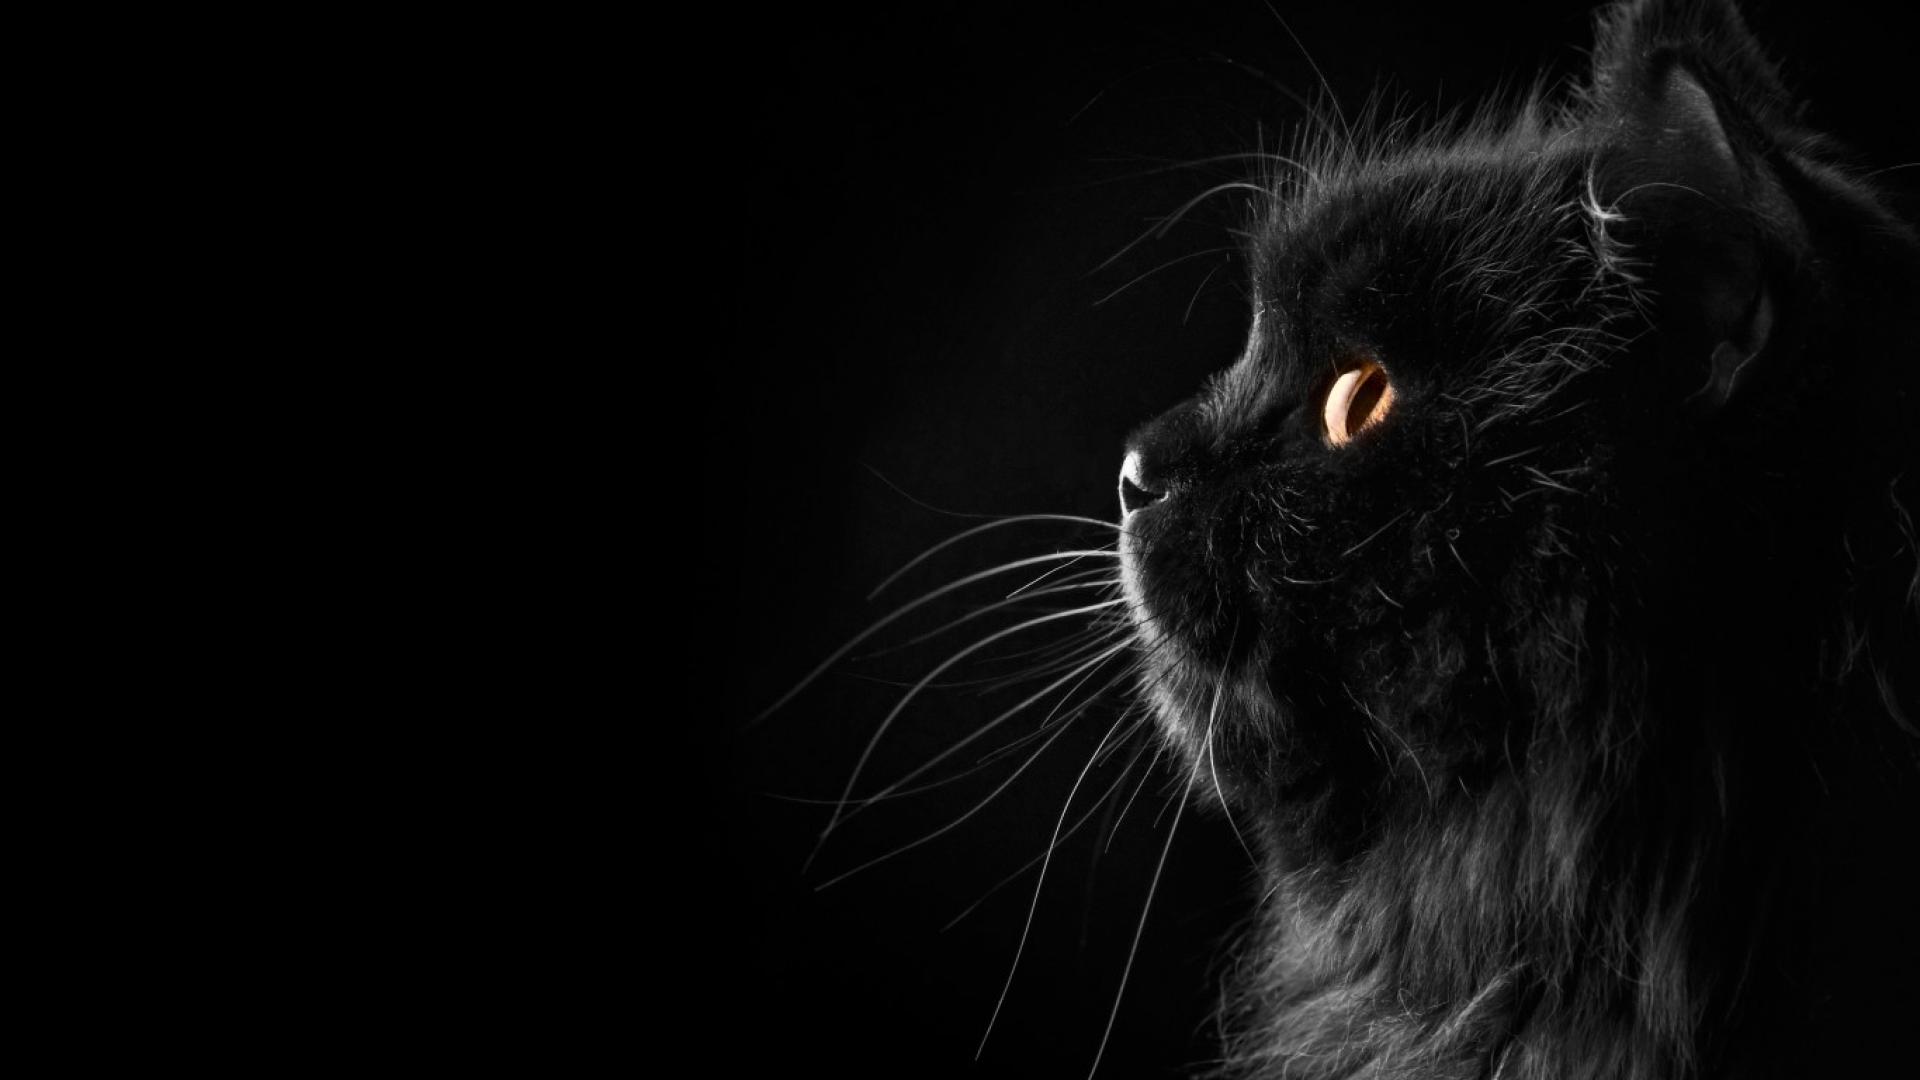 Black Cat images 2017